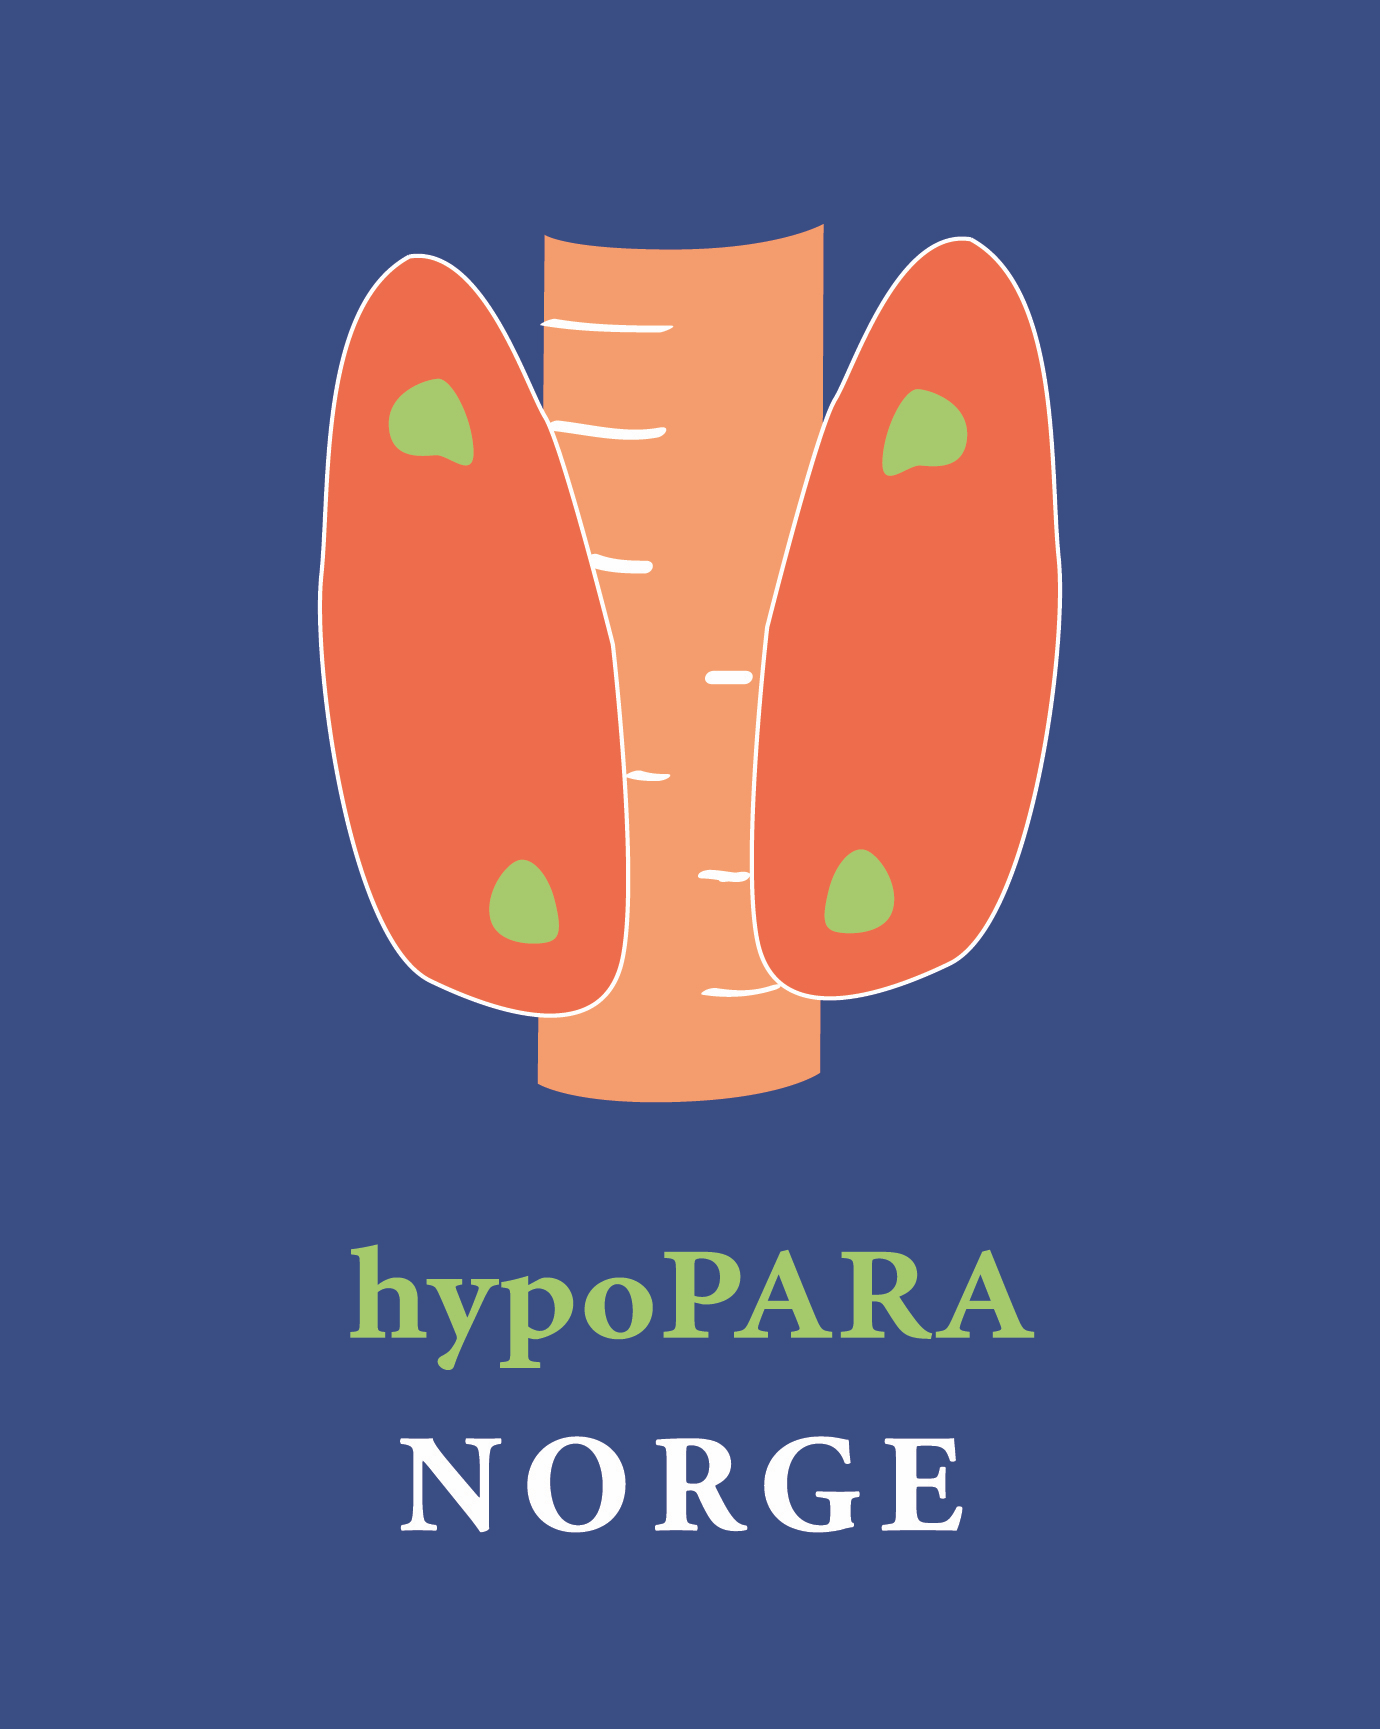 Nordic hypoPARA (Nordic Hypopara Patient Group)